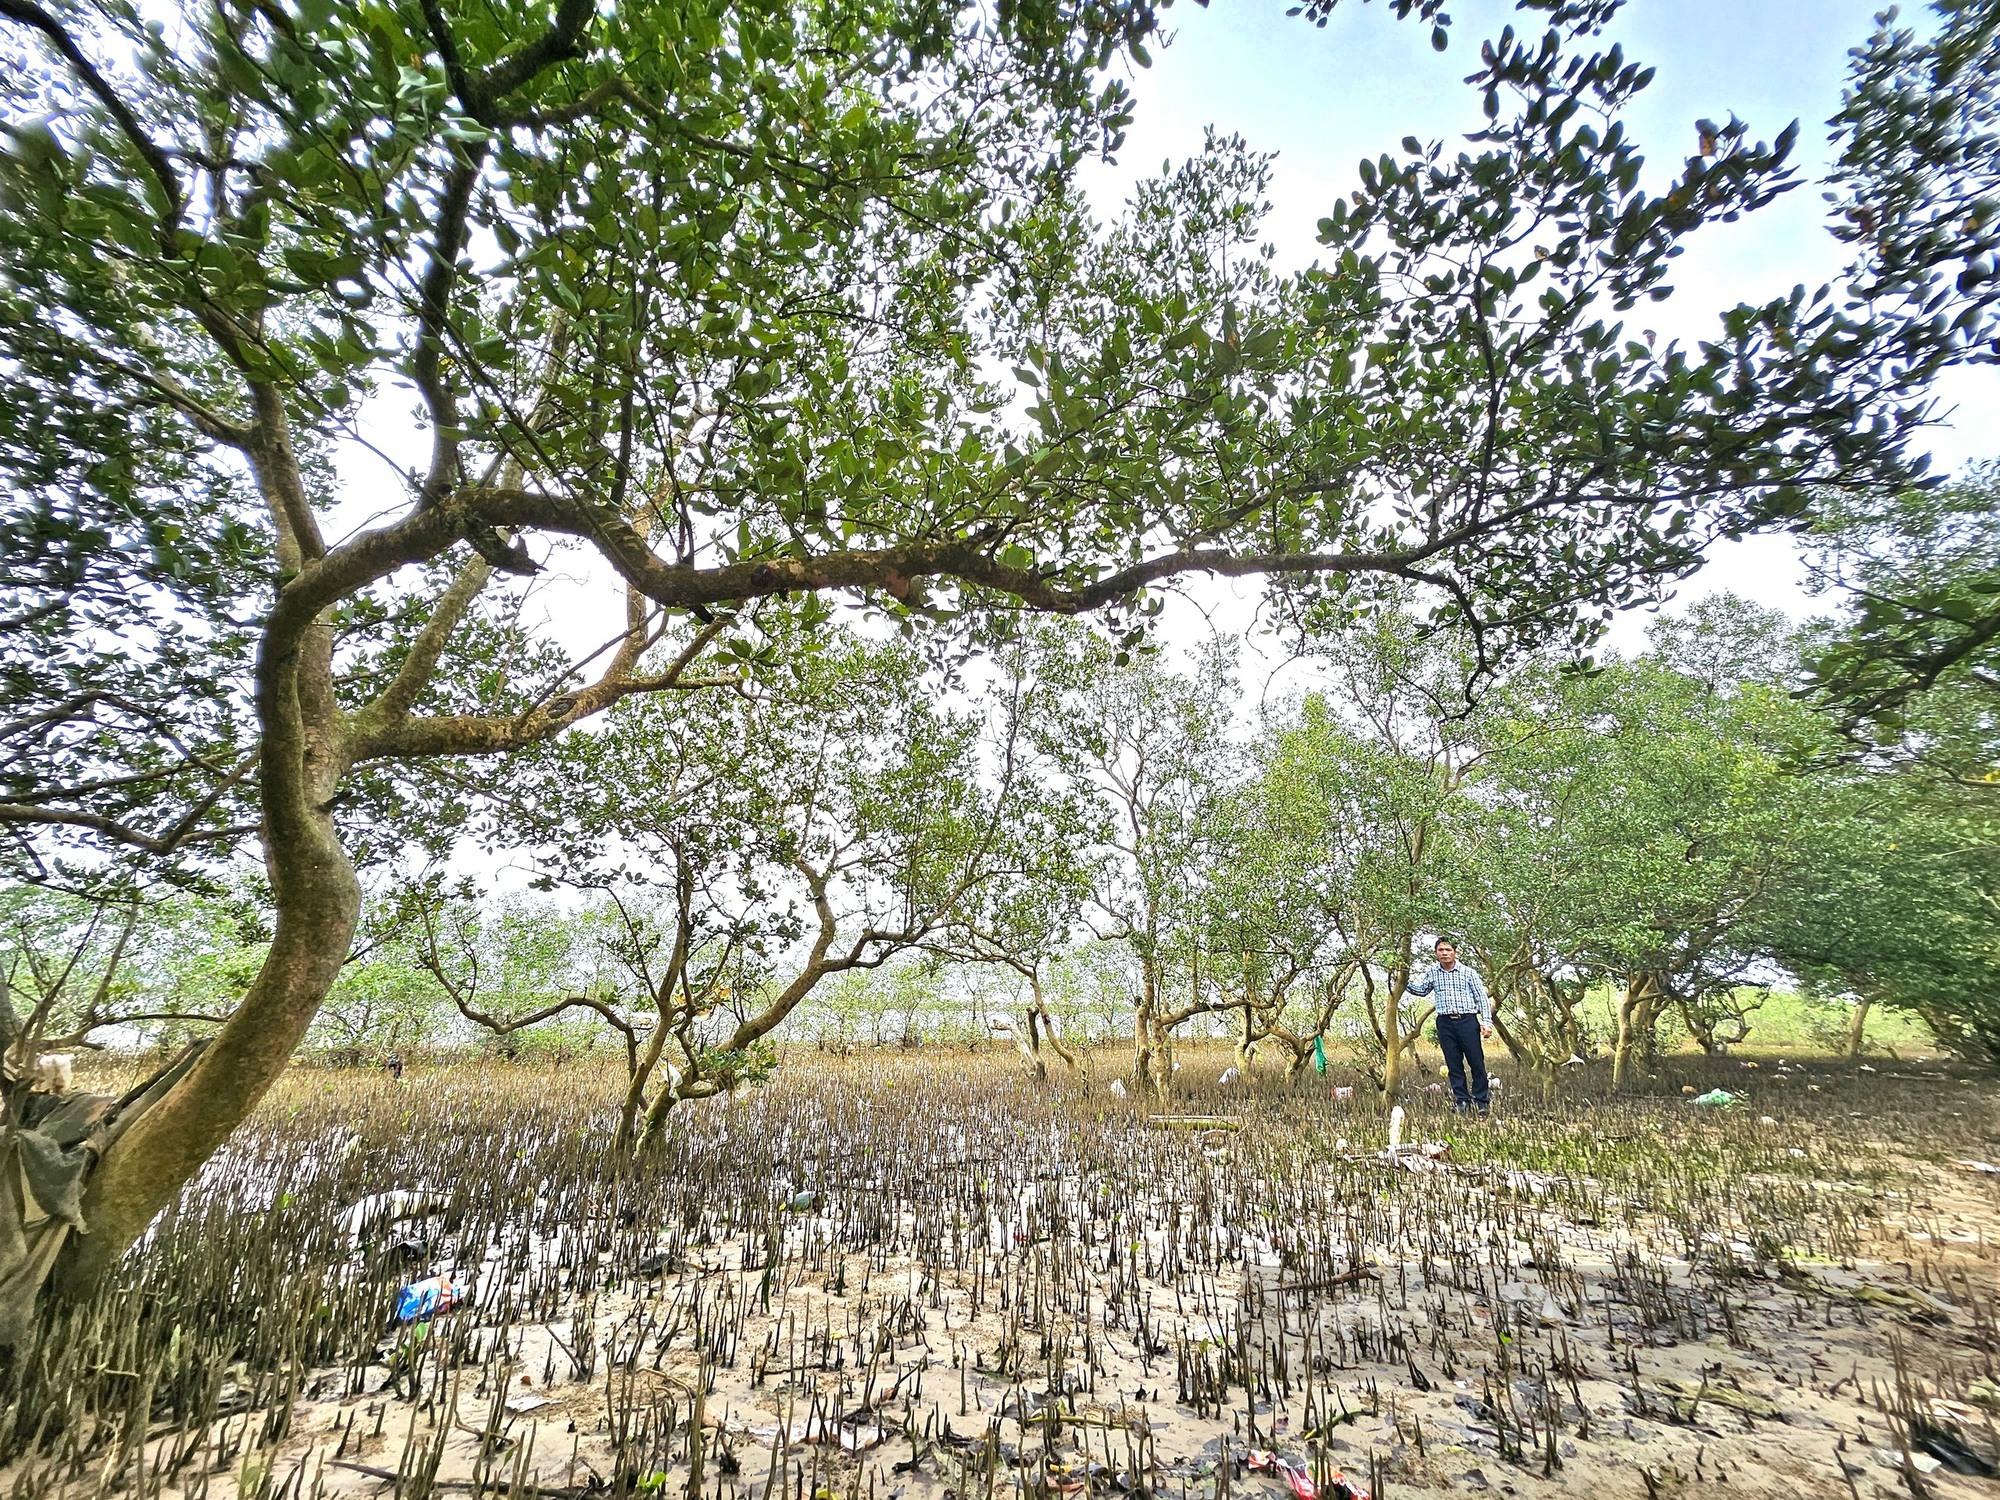 Ở khu rừng ở Quảng Bình, trên cây ra trái lạ, dưới vô số con đặc sản, chim hoang dã bay rợp mặt nước- Ảnh 2.